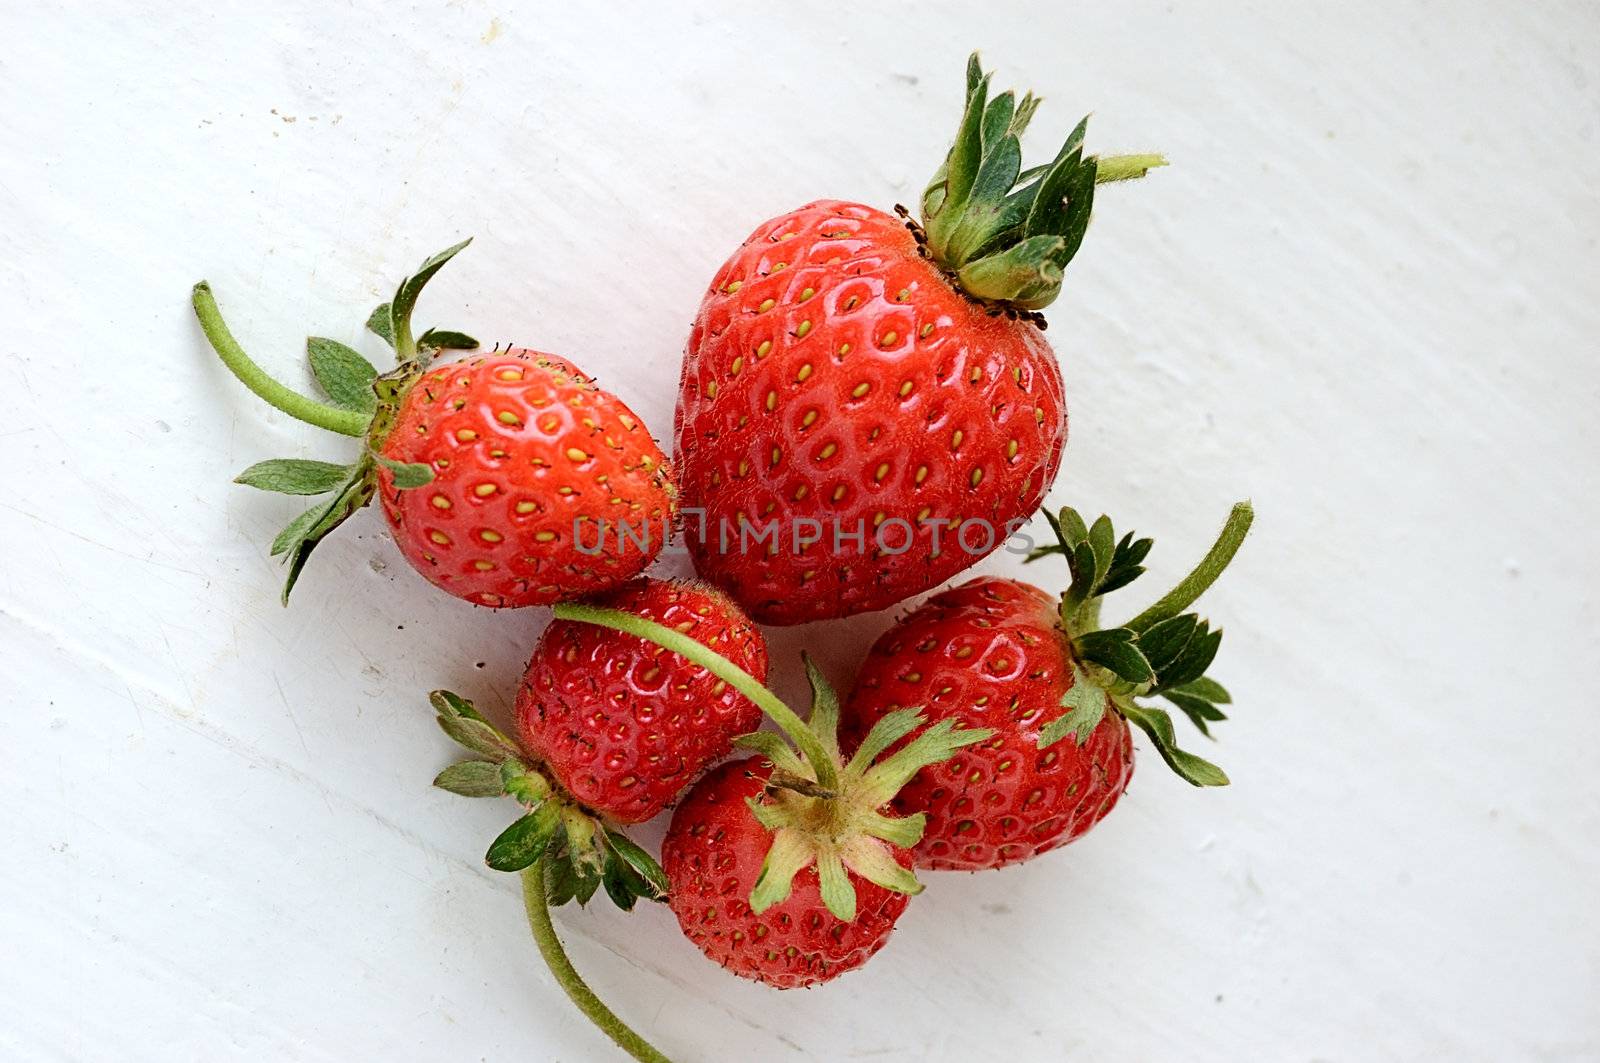 strawberries by mettus